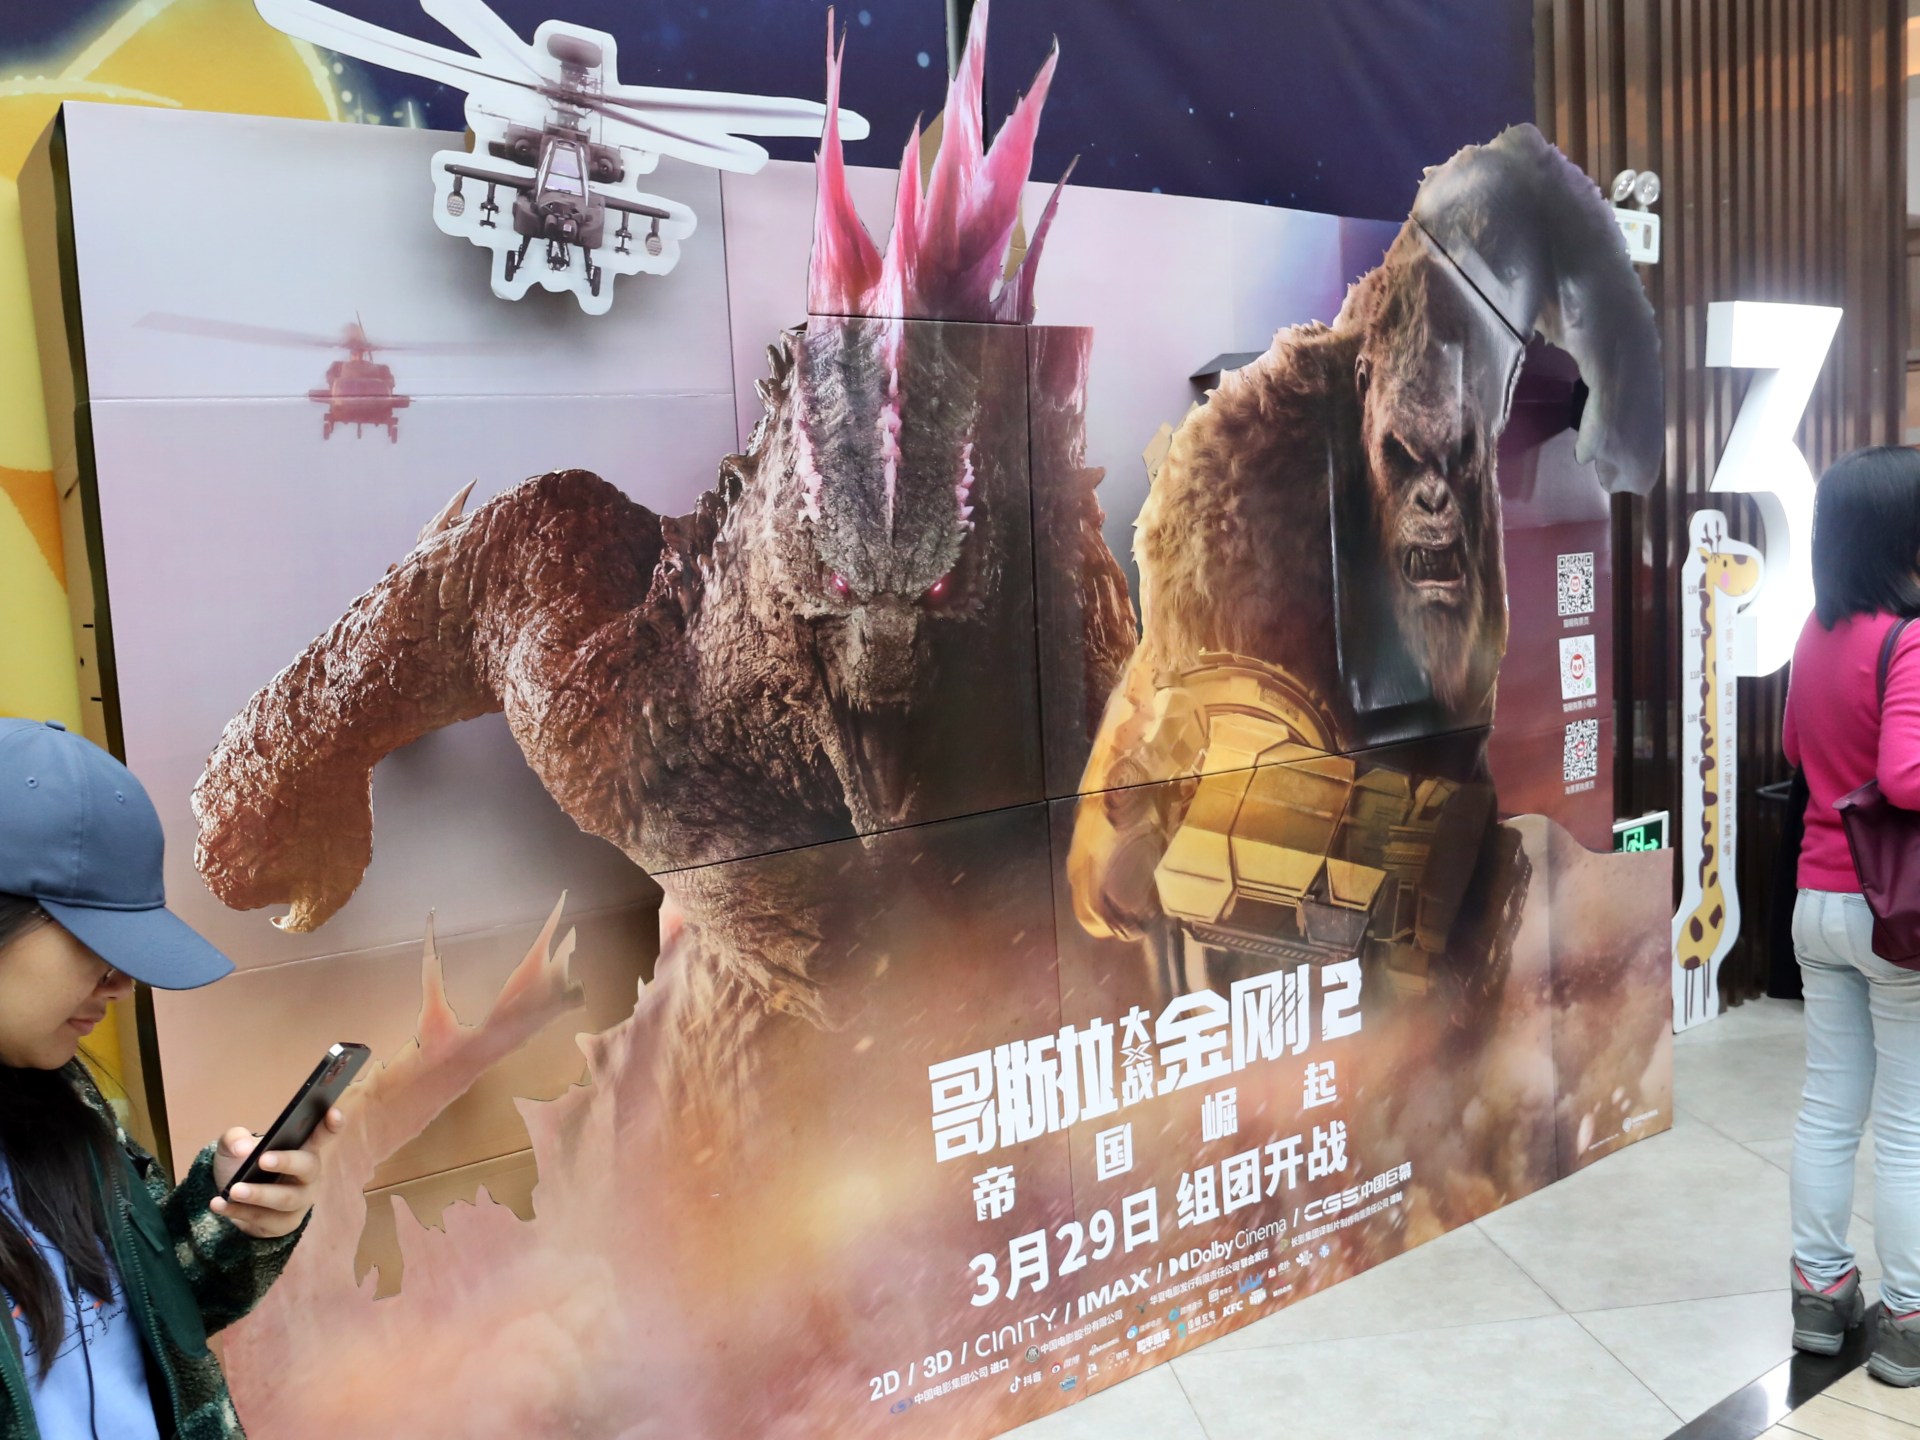 Czym w ogóle jest Godzilla?  70-letni potwór za filmami |  Wiadomości o sztuce i kulturze